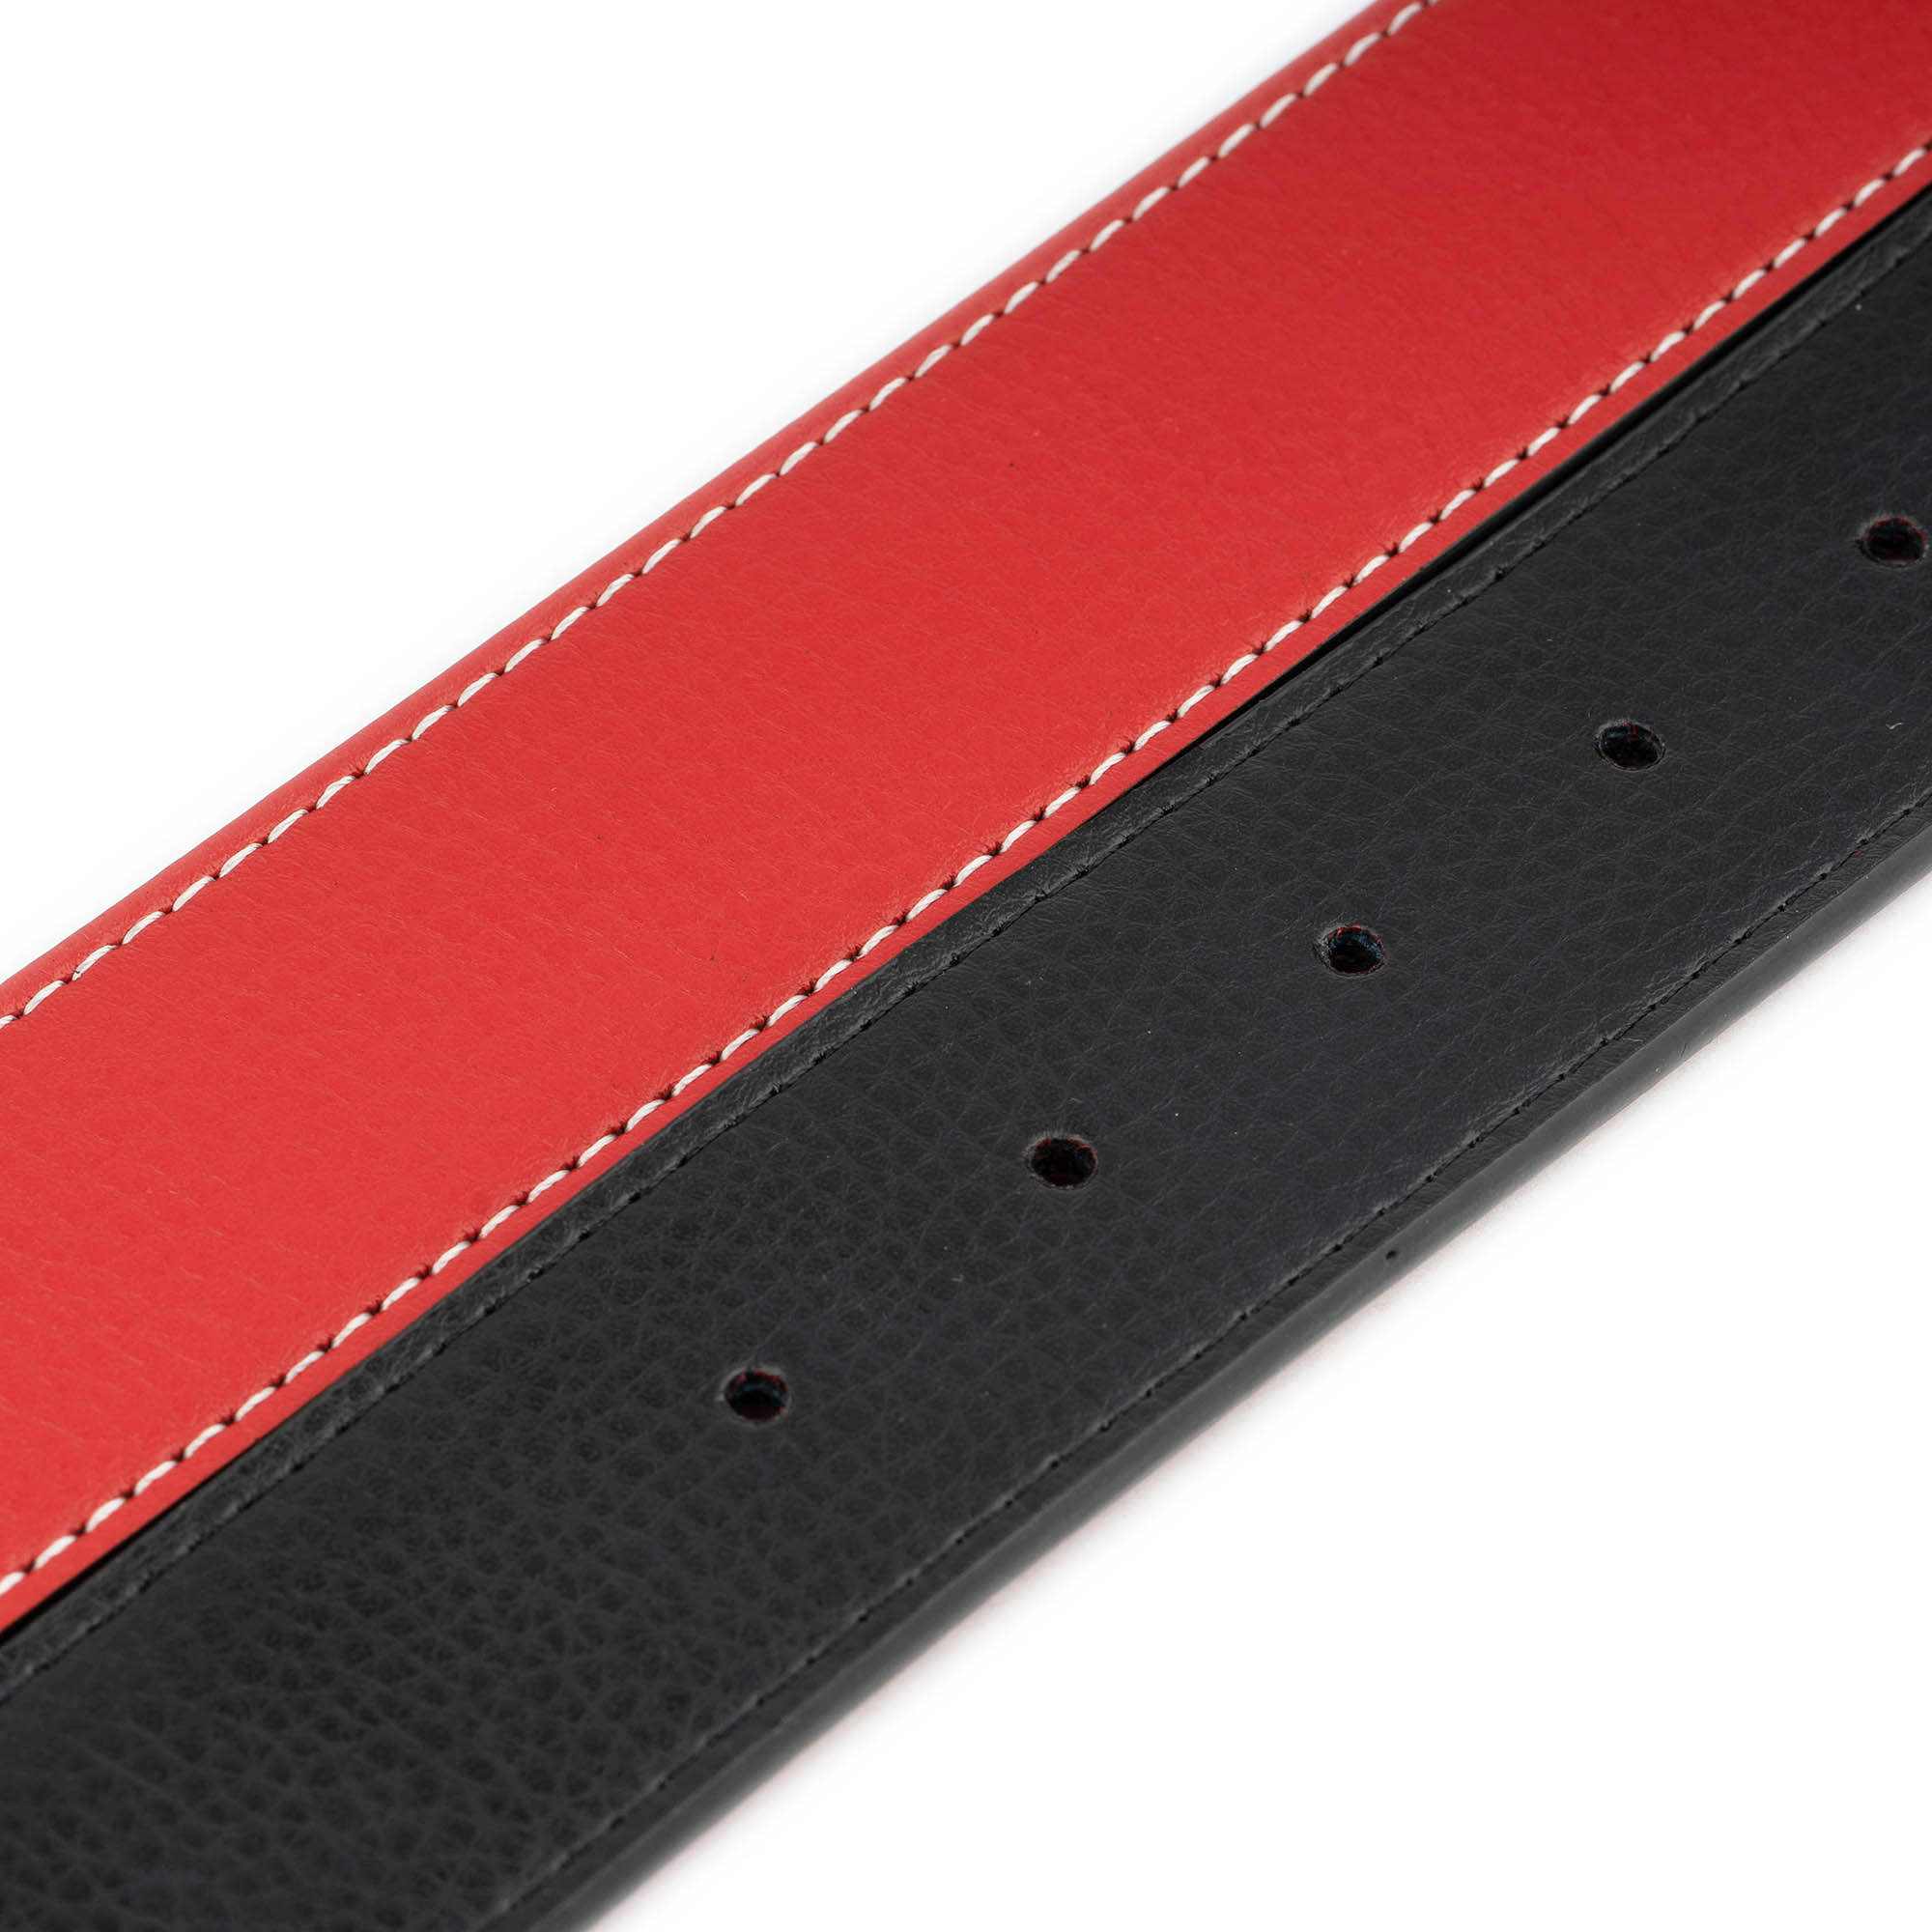 Luis Vuitton Leather belt 2 Cm